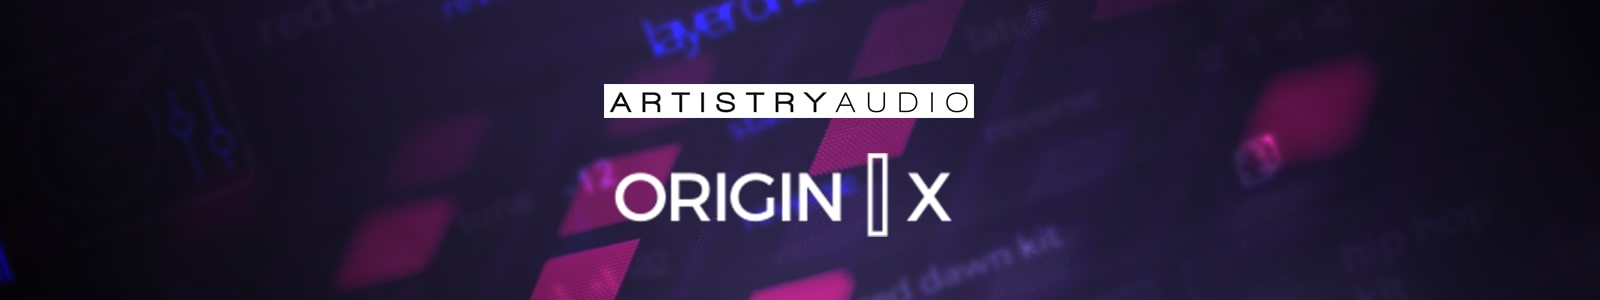 origin x